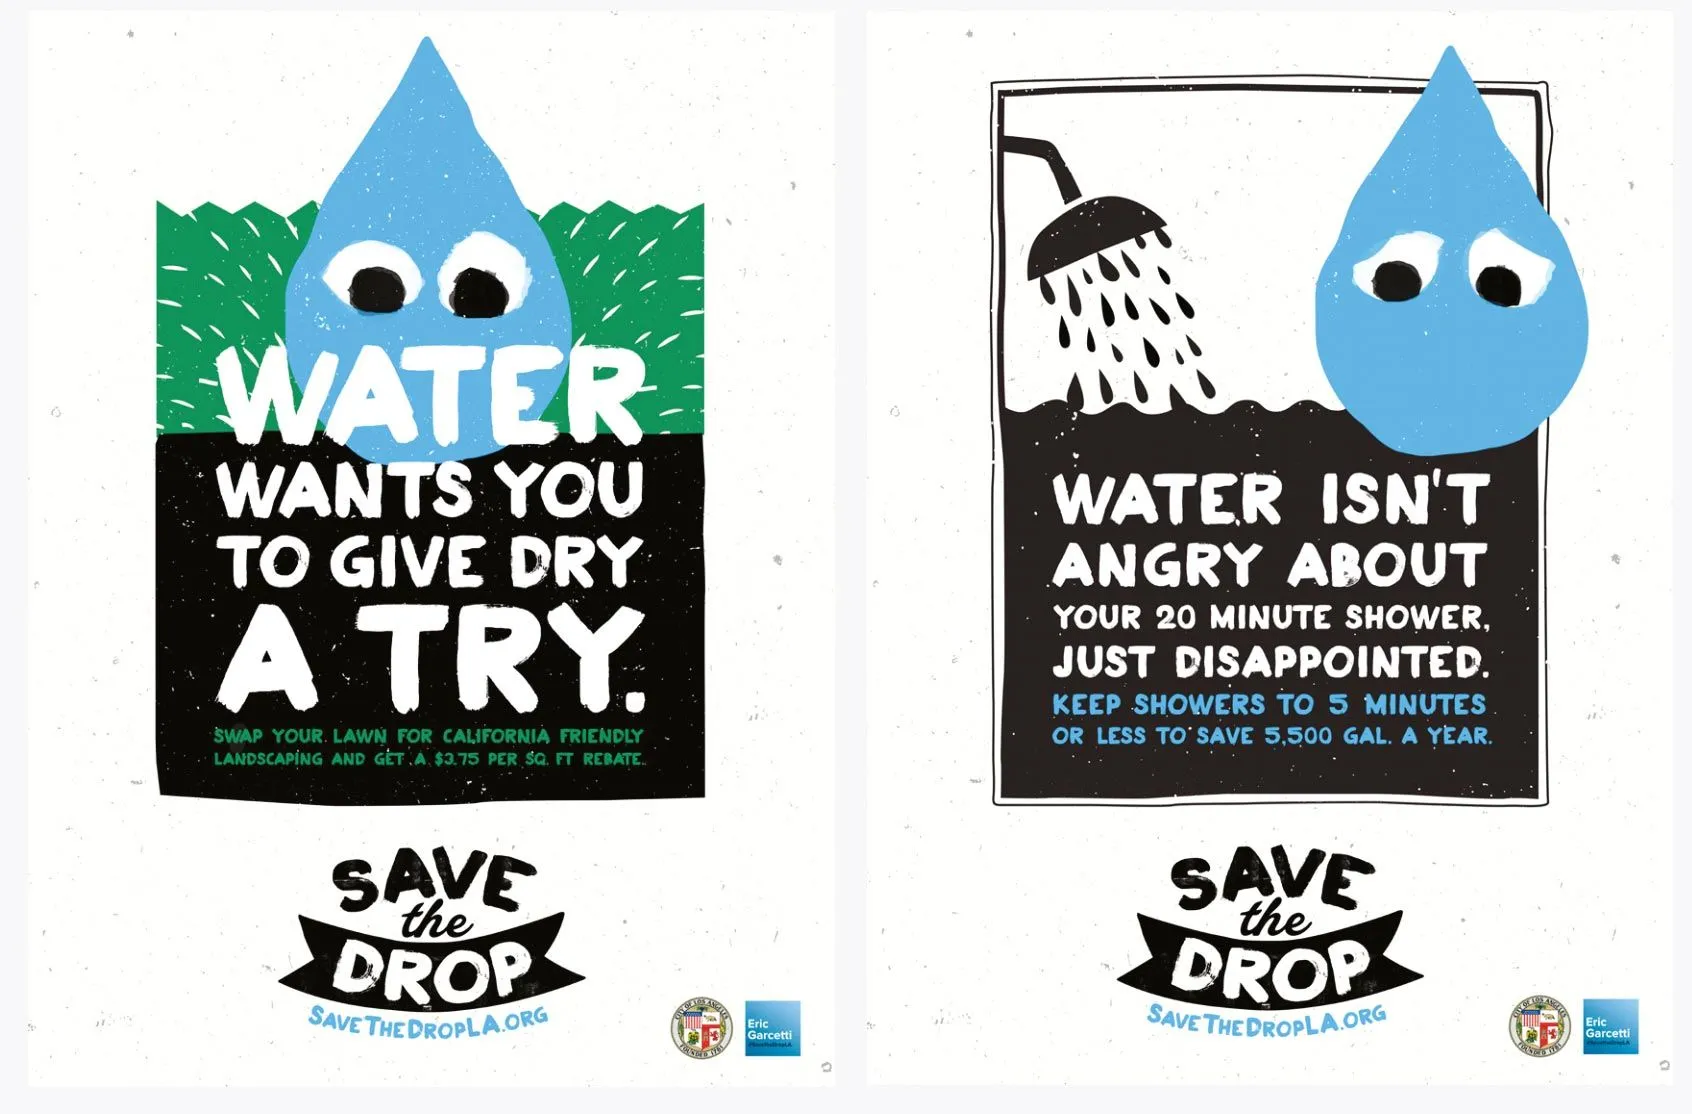 Campagne de sensibilisation « Save the drop », produite par la ville de Los Angeles, 2015